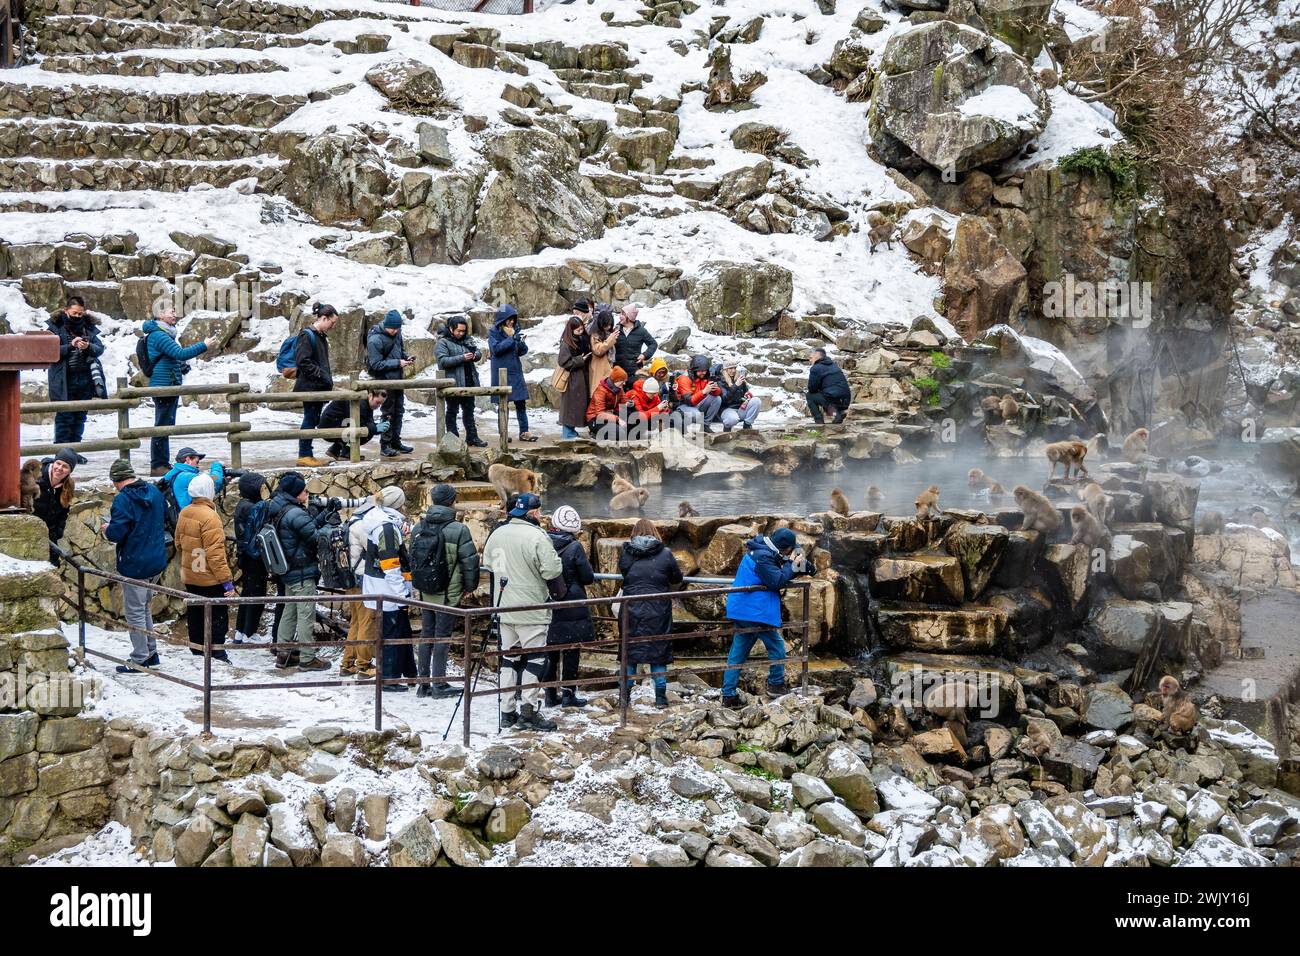 Touristen aus aller Welt besuchen den Snow Monkey Park (地獄谷野猿公苑), um japanische Makaken (Macaca fuscata) beim Baden in heißen Quellen zu beobachten. Nagano, Japan. Stockfoto